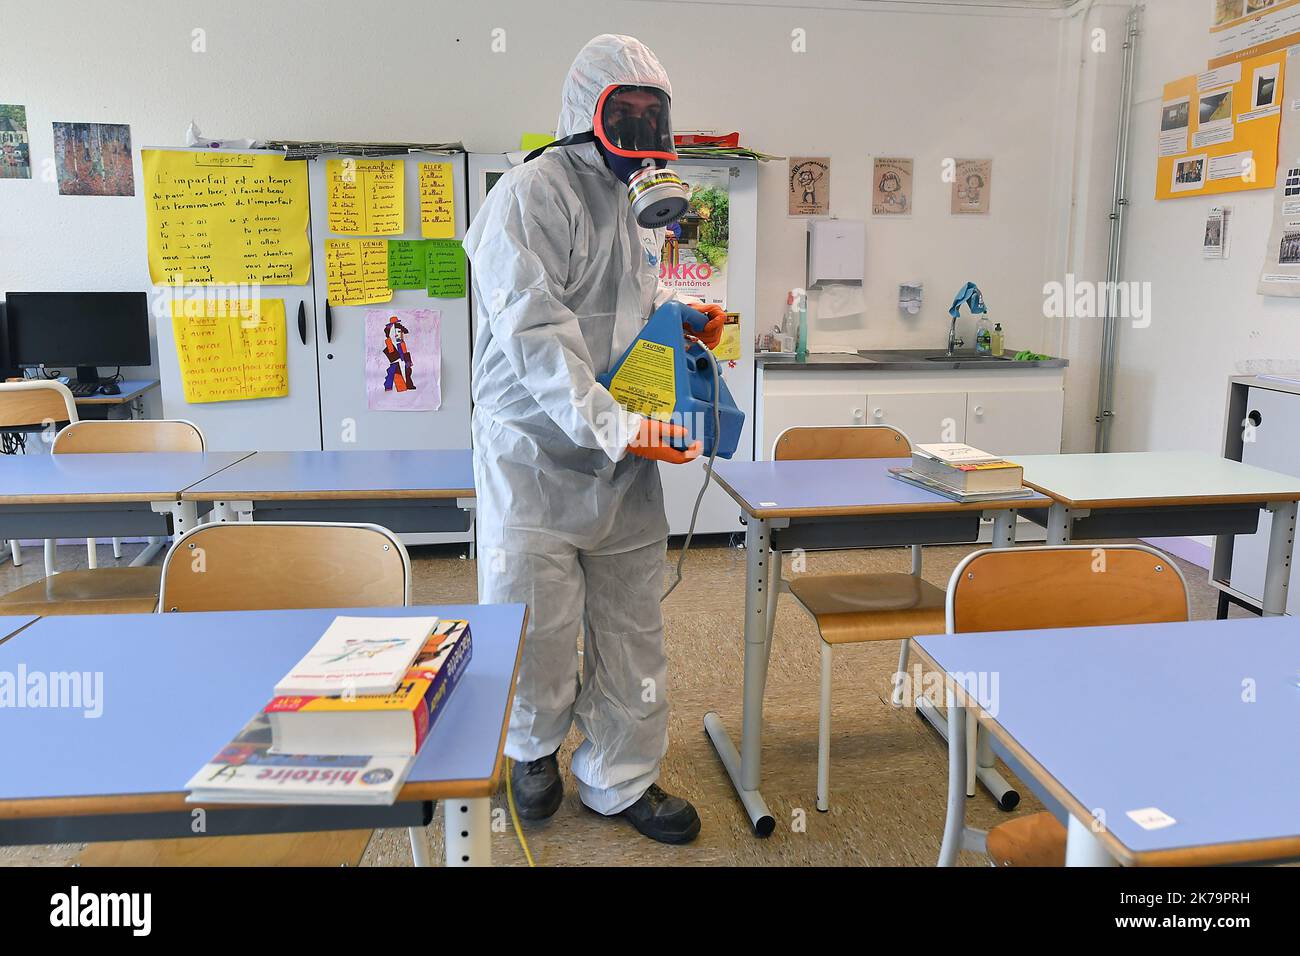 Coronavirus-Dekontamination der Calmette-Schule in Villeneuve d'Ascq nach Covid-19 2020/05/25. Desinfektion der Schule. Frankreich Stockfoto